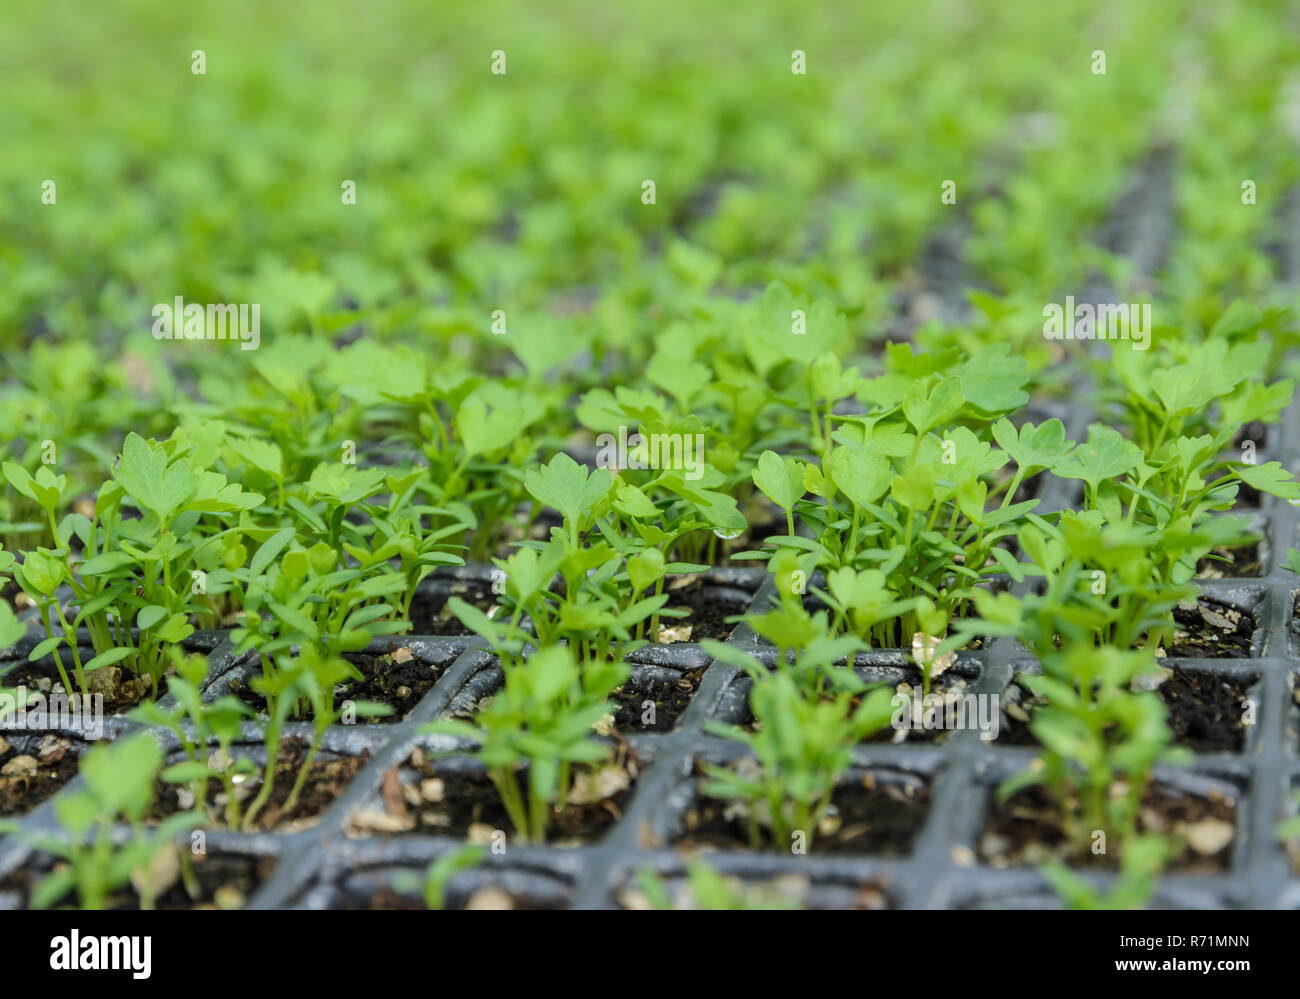 Chinesischer Sellerie Setzlinge pflanzen in der Gärtnerei Stockfotografie -  Alamy